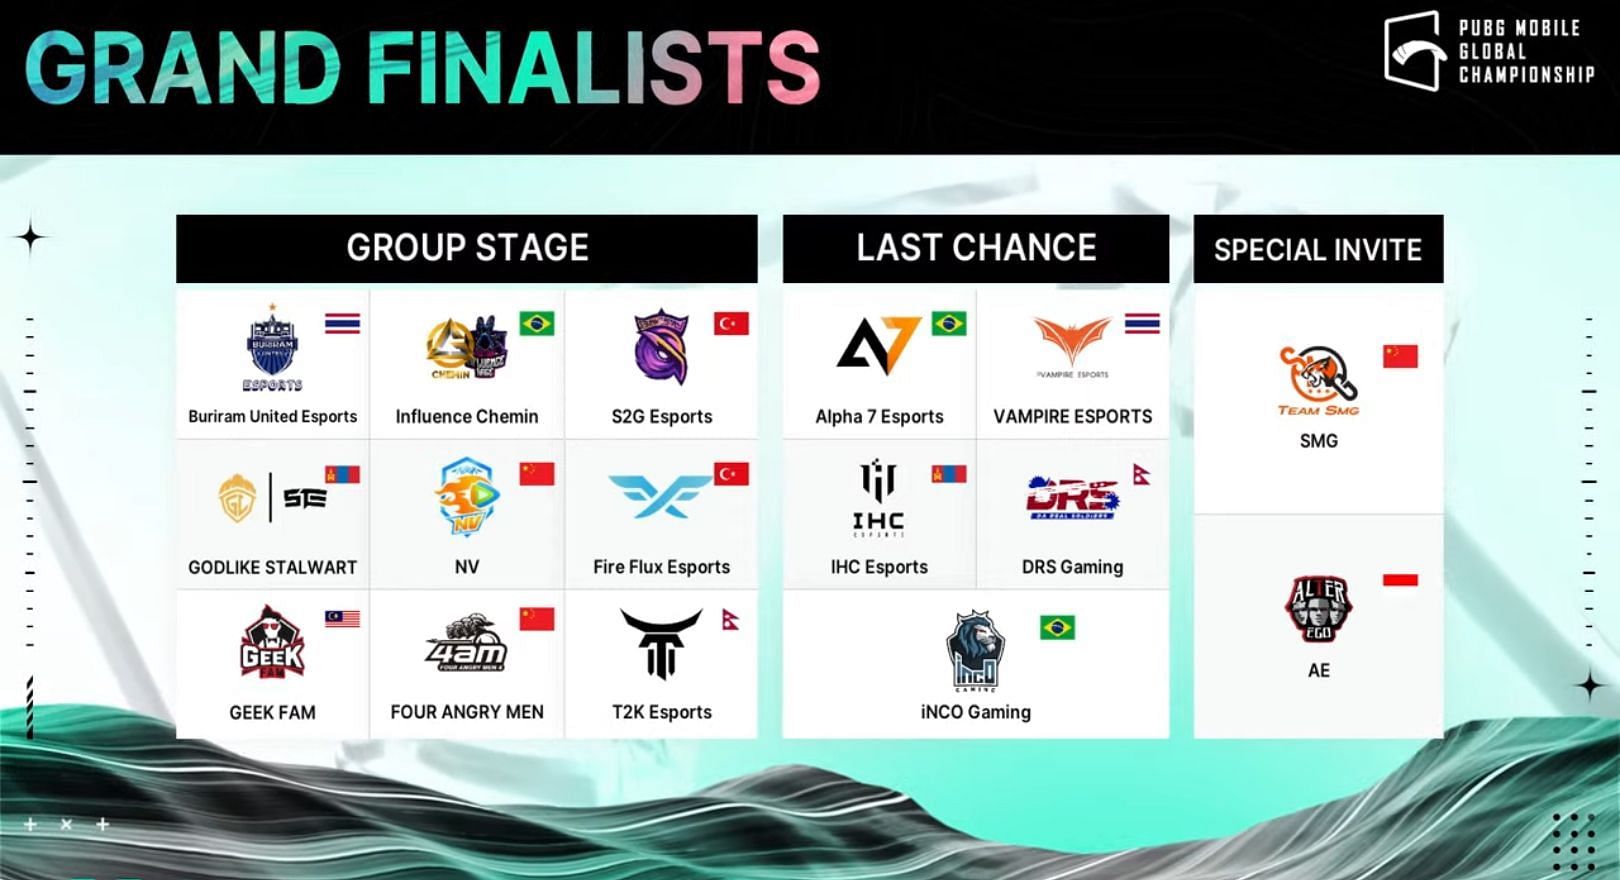 Global Championship 2022 Finals participants (Image via PUBG Mobile)